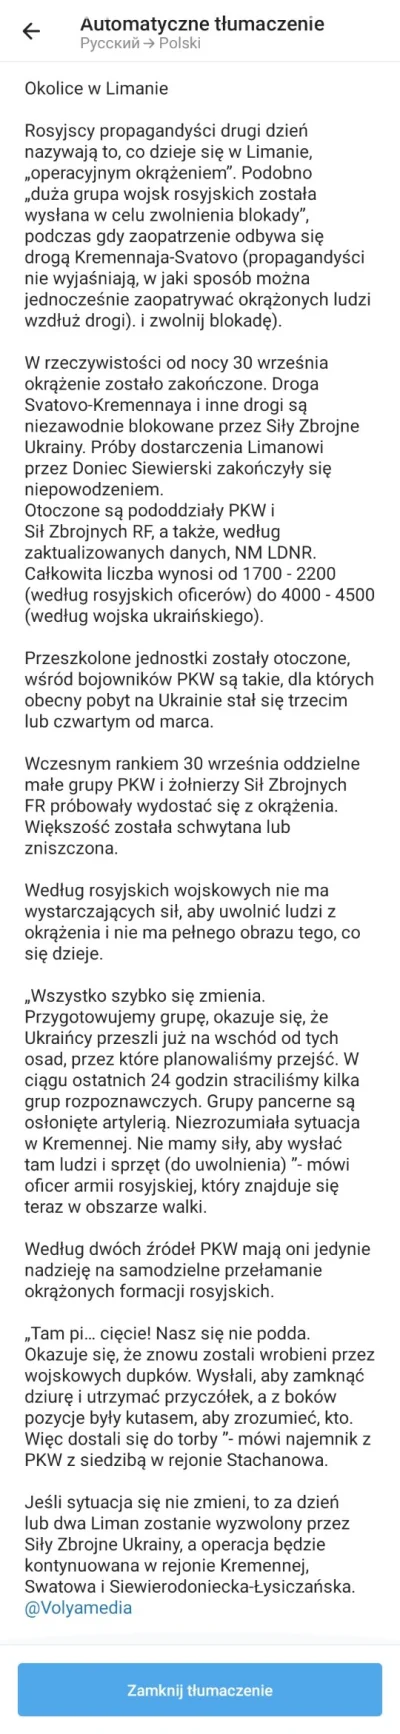 kjungst - #ukraina #wojna #Lyman Na 30.09.2022. Kanal rosyjski, dziennikarski, nie pr...